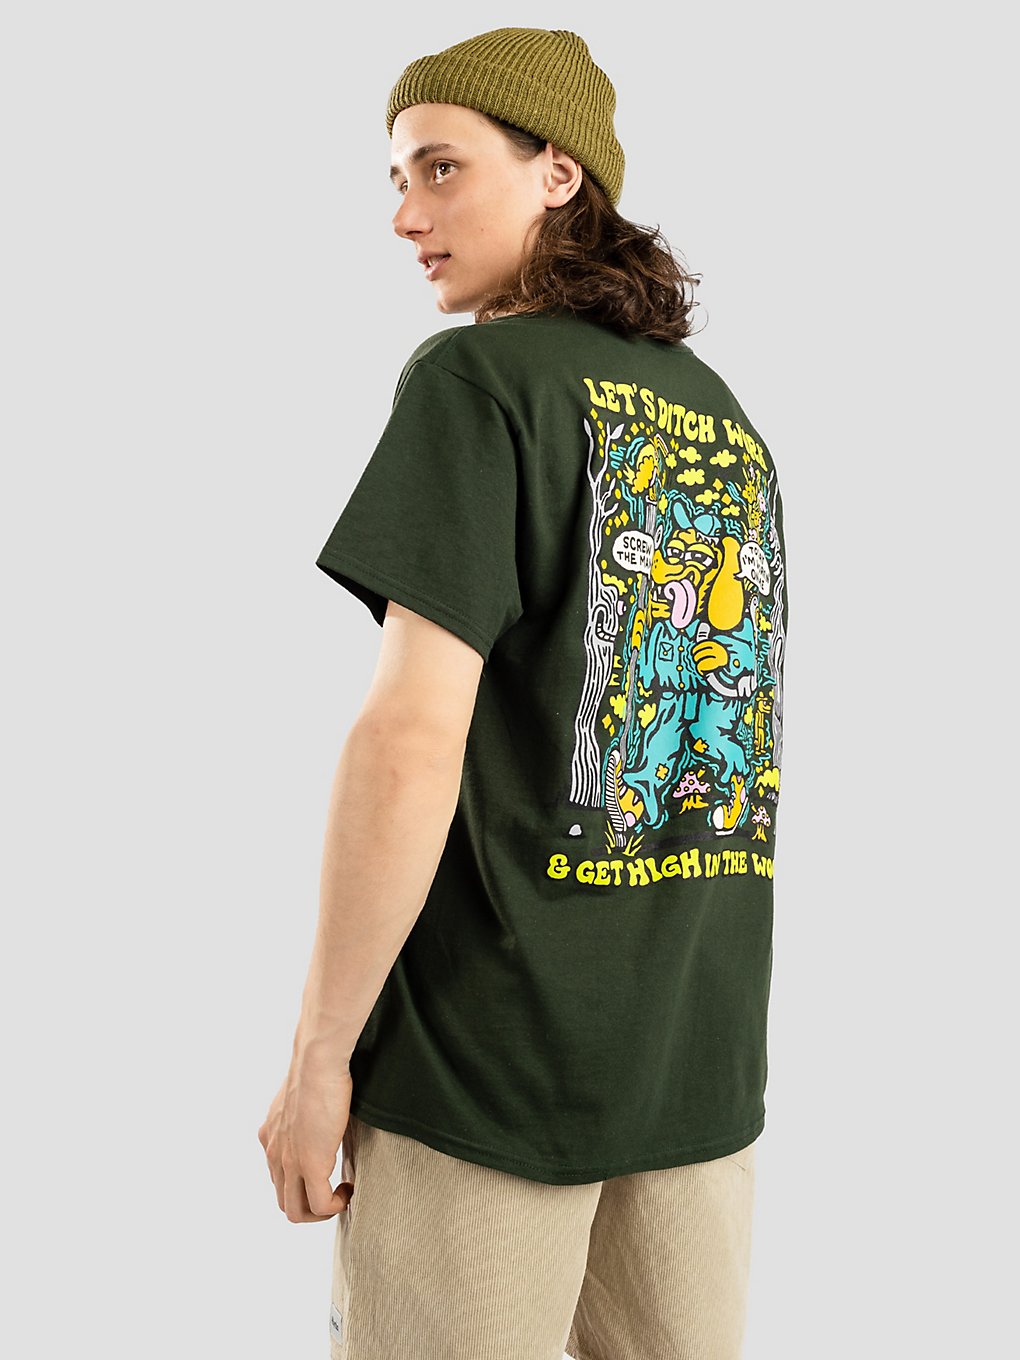 Killer Acid Field Trip T-Shirt groen